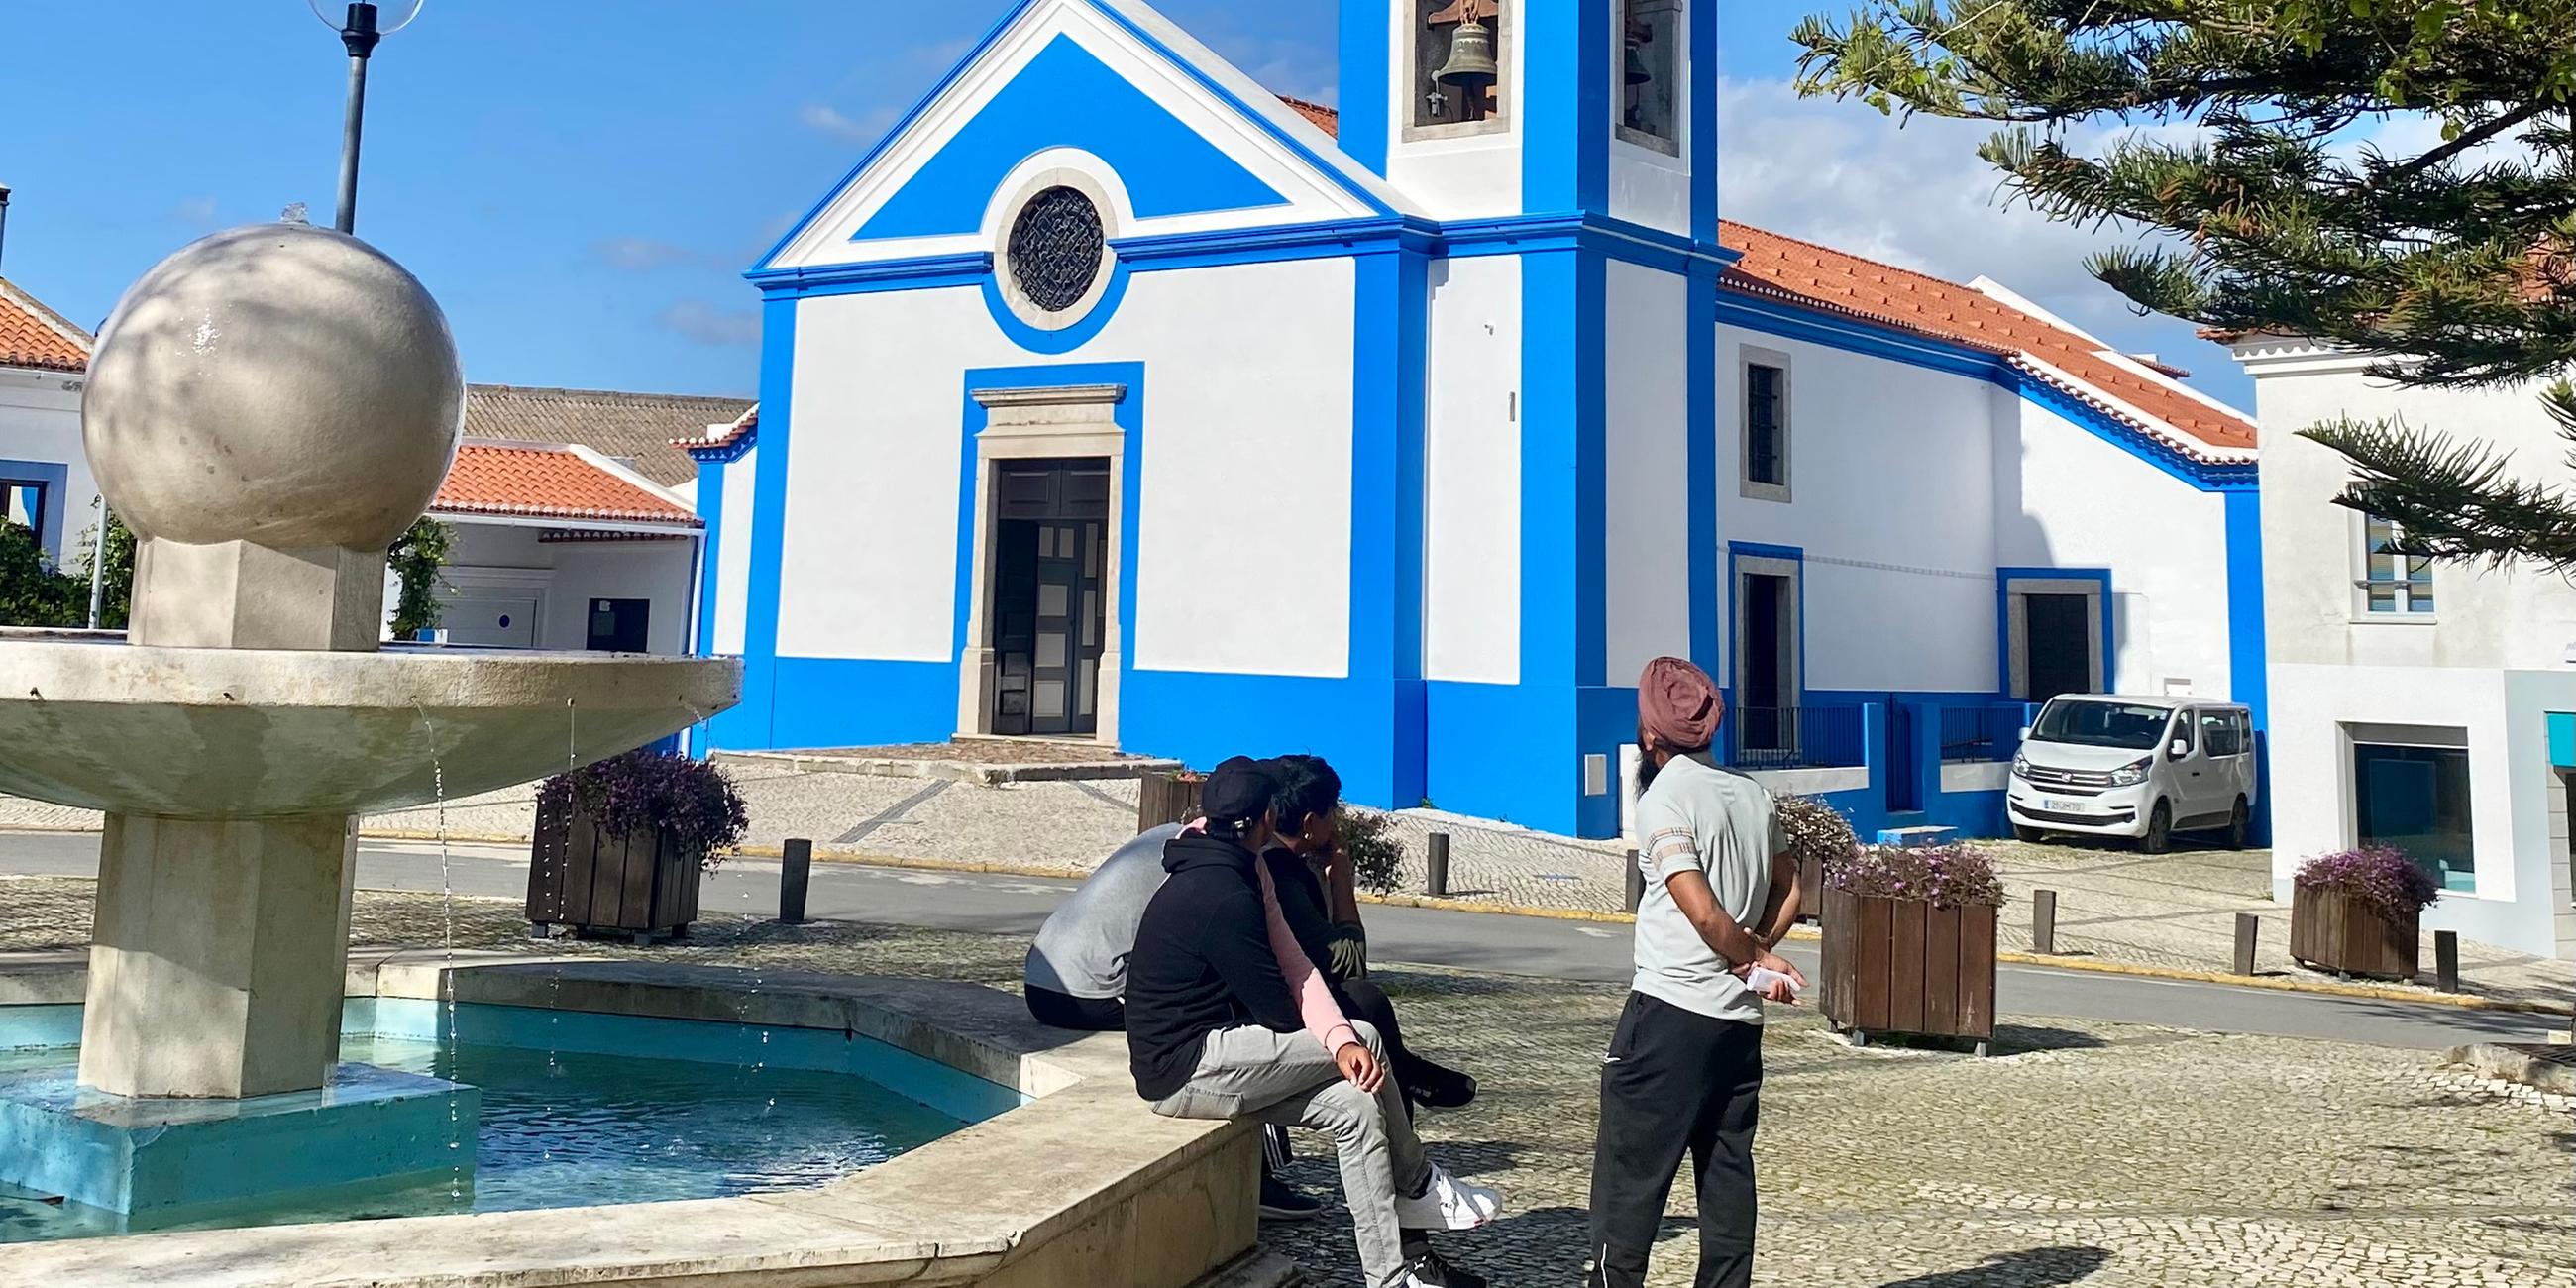 In einer portugisischen Stadt befindet sich auf dem Platz vor der Kirche ein Brunnen, an dessen Rand Menschen sitzen.